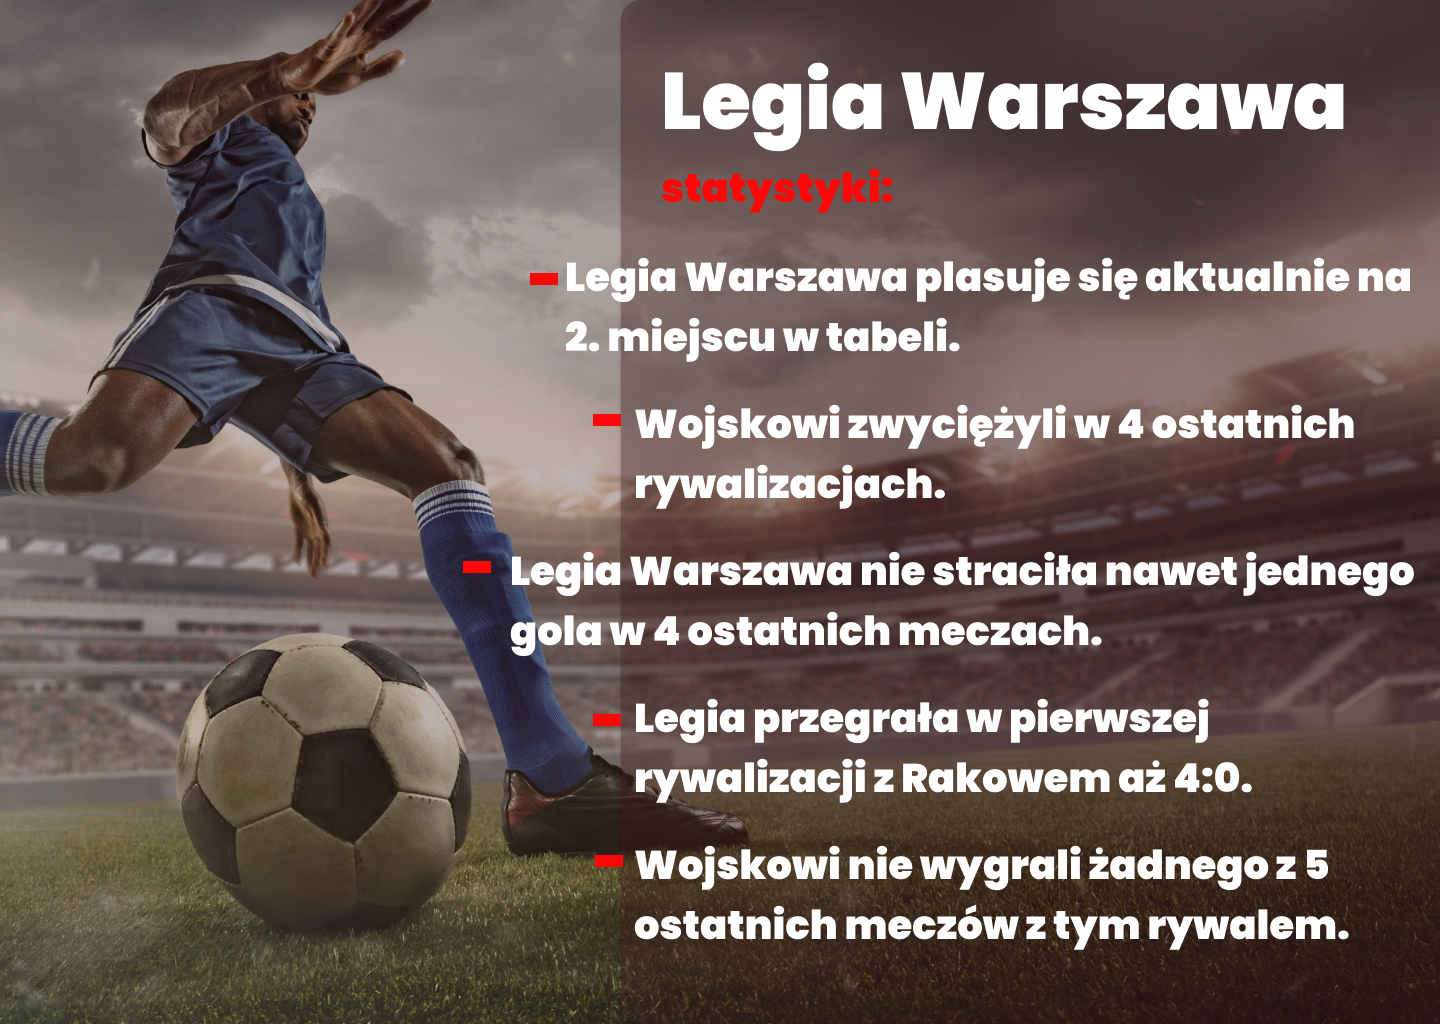 Legiia Warszawa Statystyki